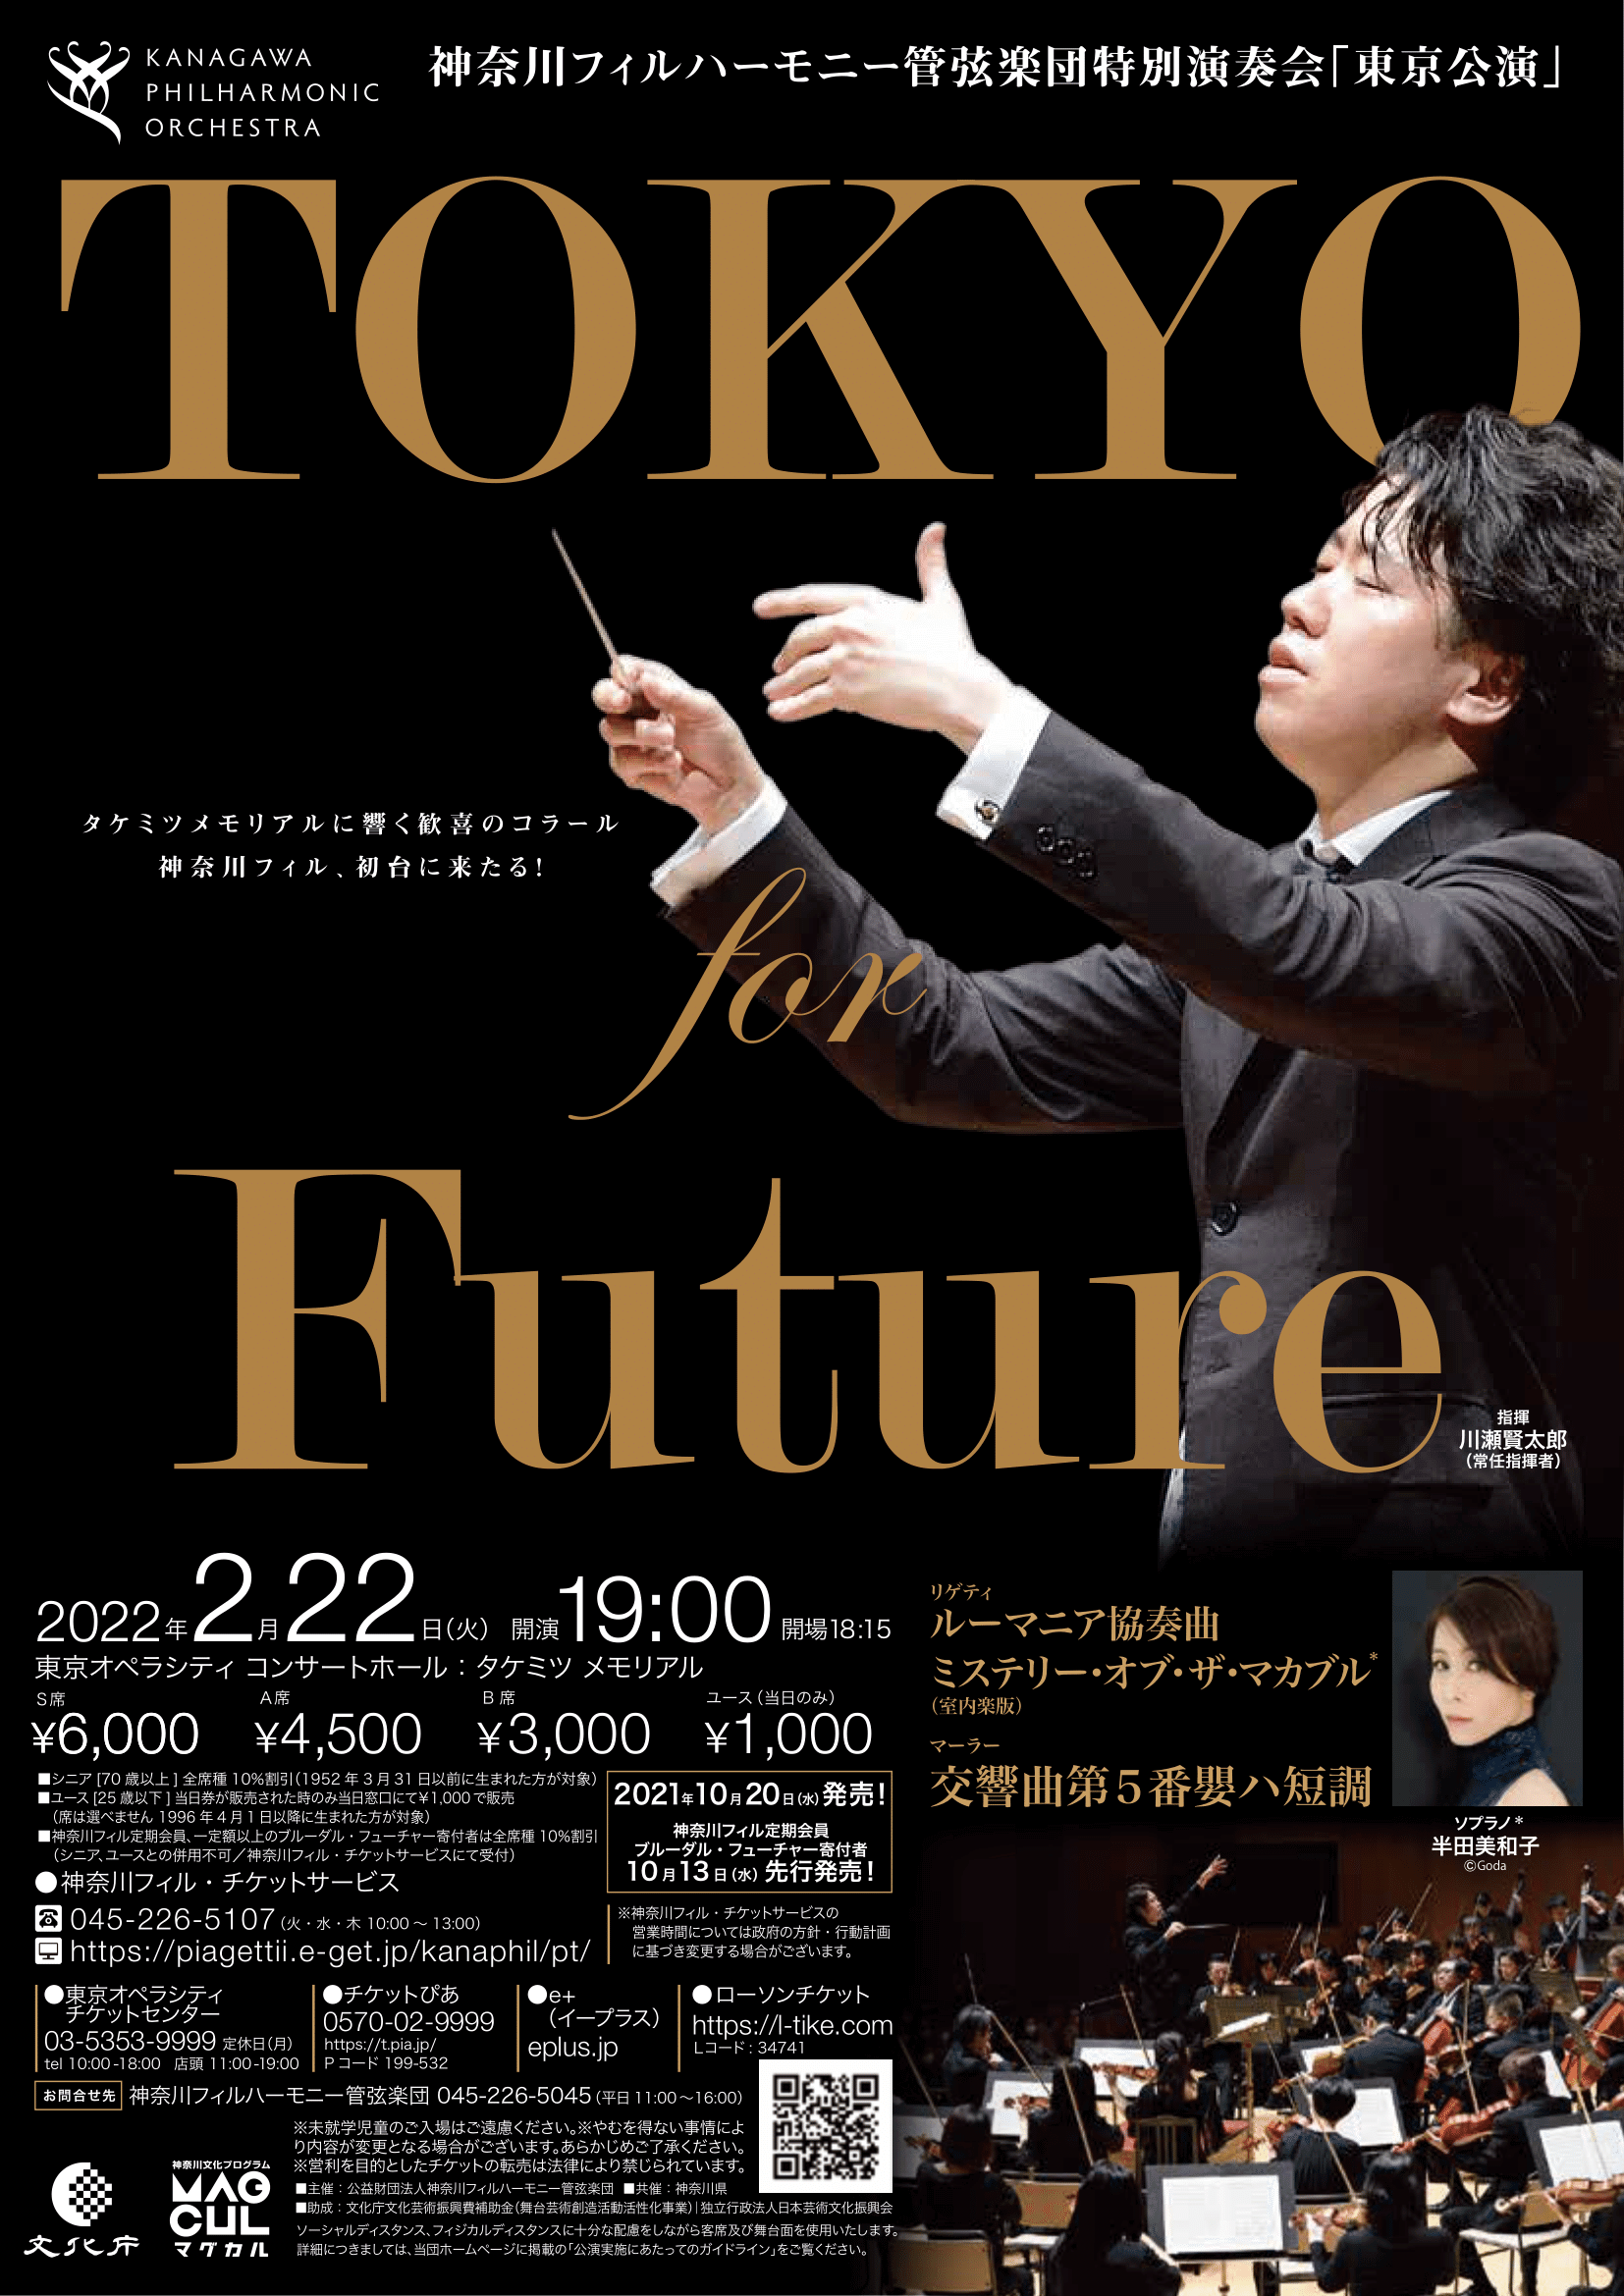 神奈川フィルハーモニー管弦楽団 東京公演 for Future